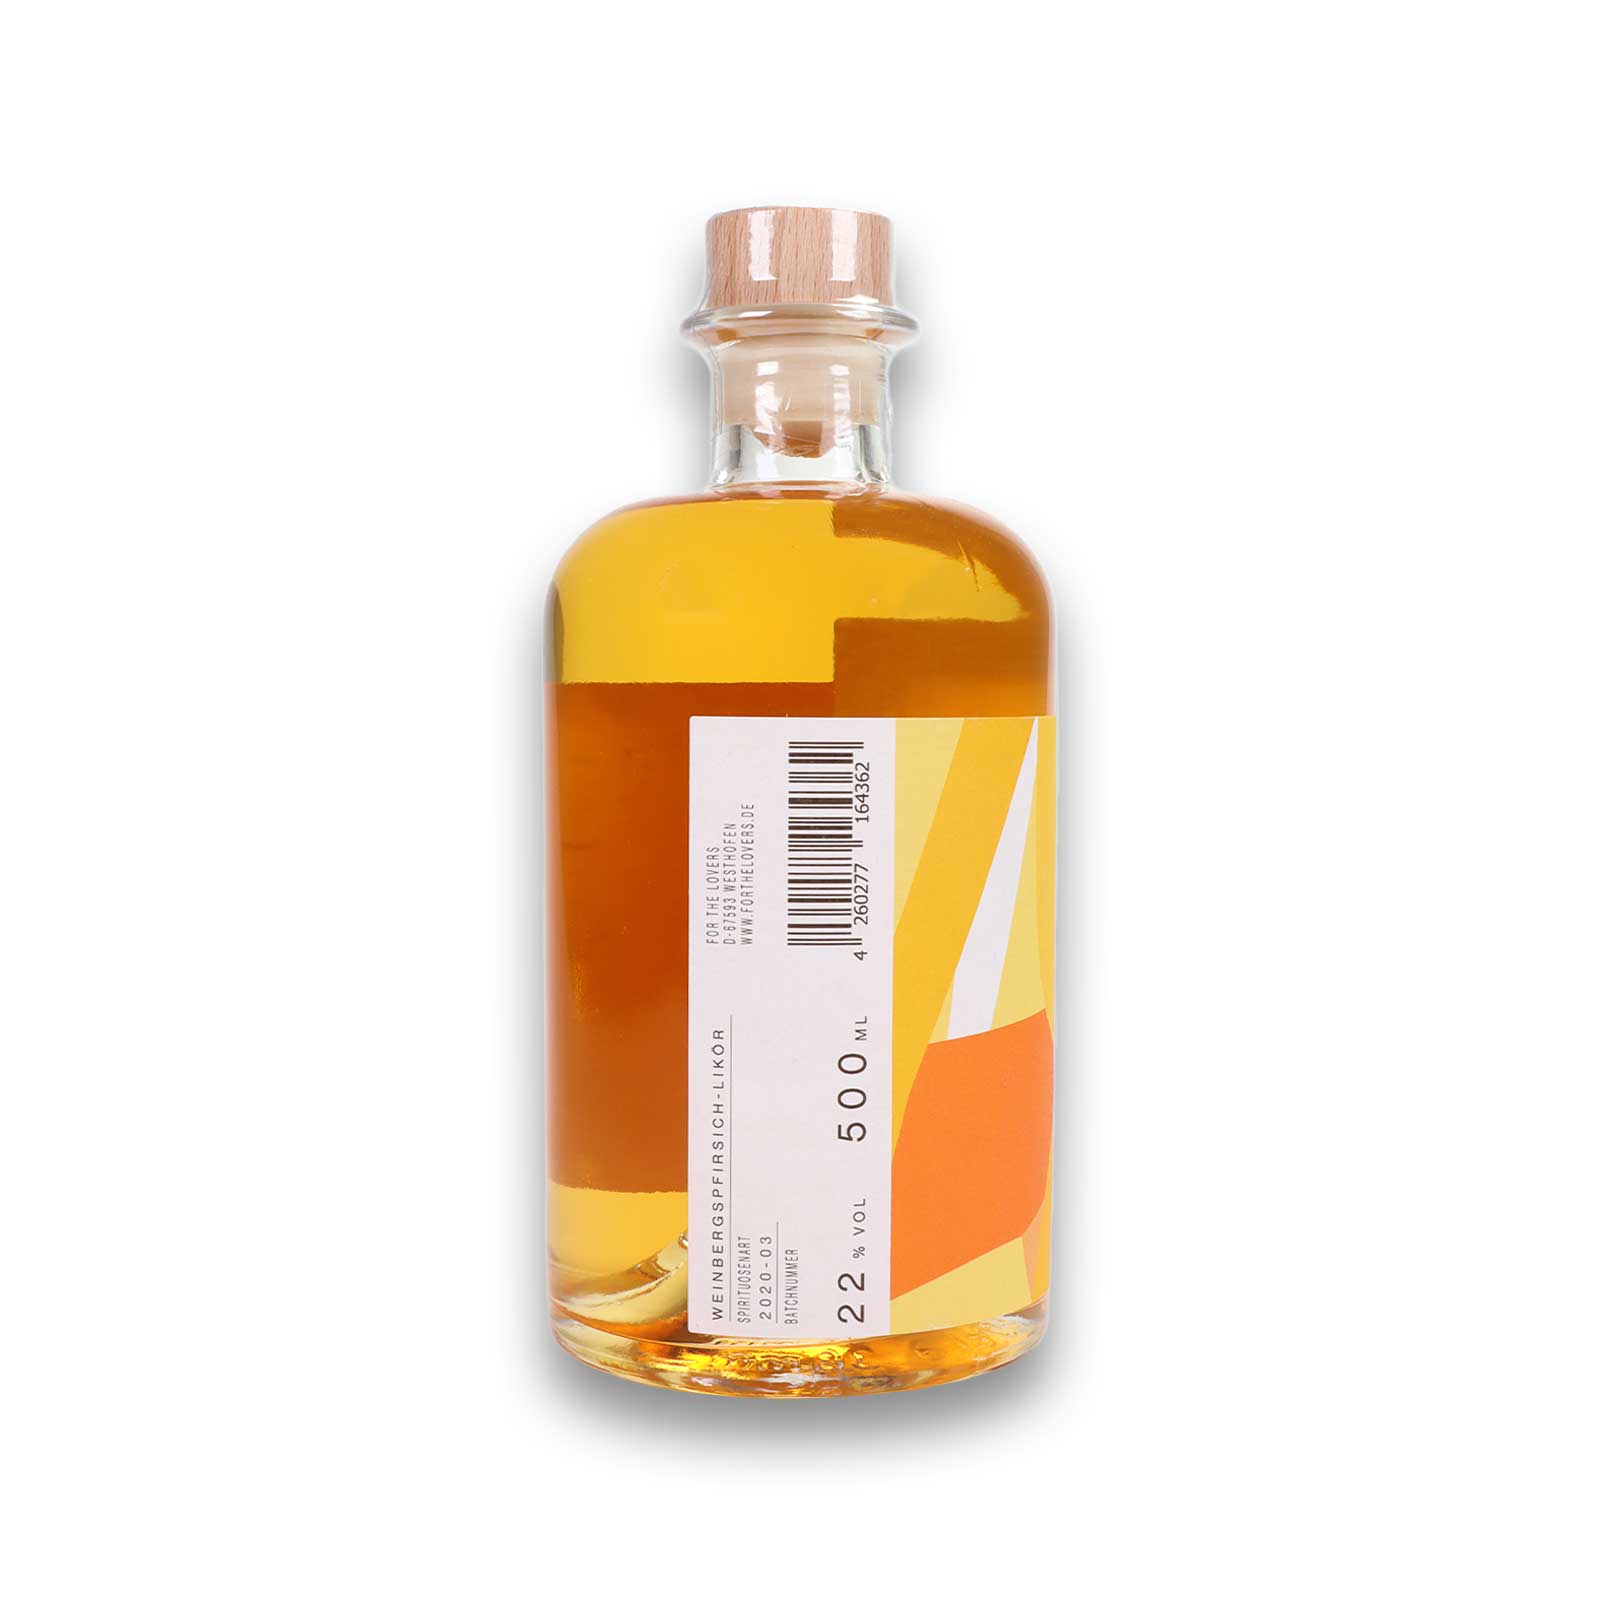 Rückseiten-Etikett des Weinbergspfirsich Likör mit der Angabe 500ml und 20% vol.